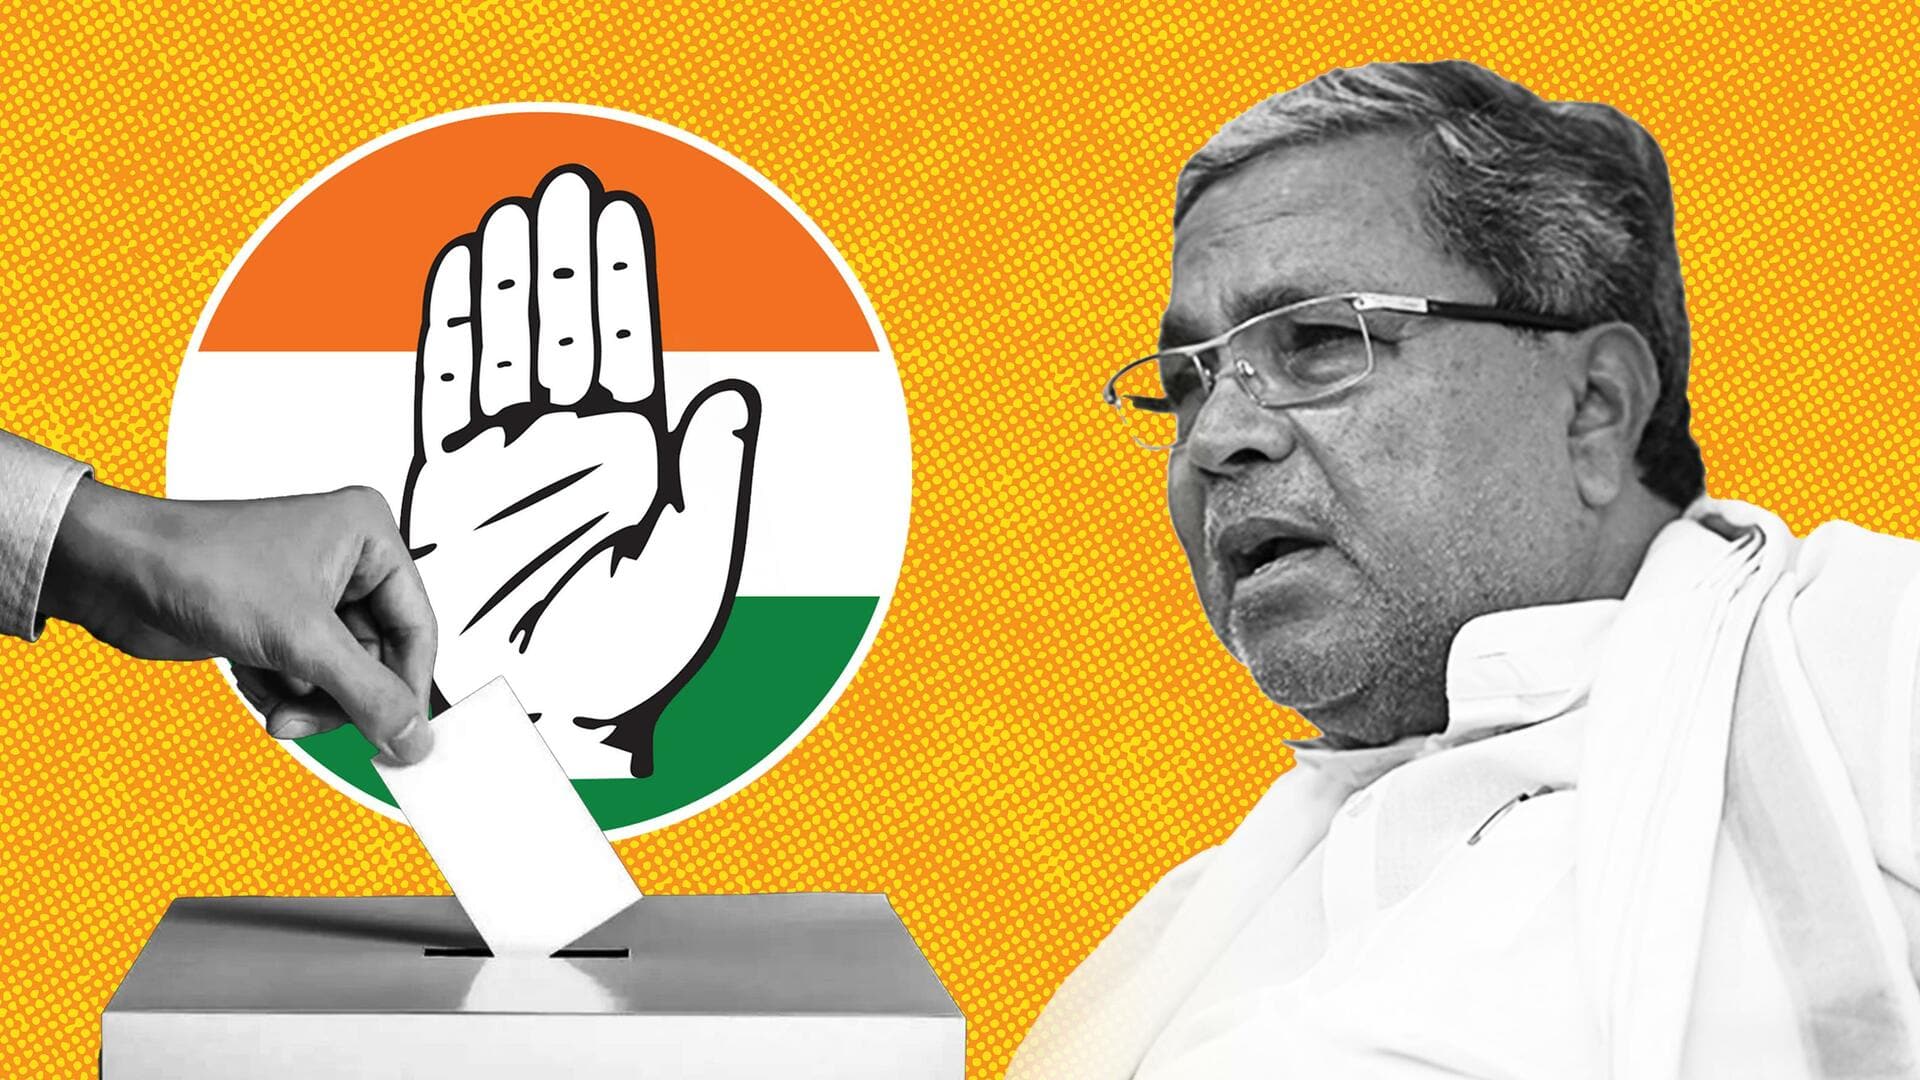 कर्नाटक चुनाव: कांग्रेस उम्मीदवारों की पहली सूची जारी, वरुणा से बेटे की जगह सिद्धारमैया लड़ेंगे चुनाव